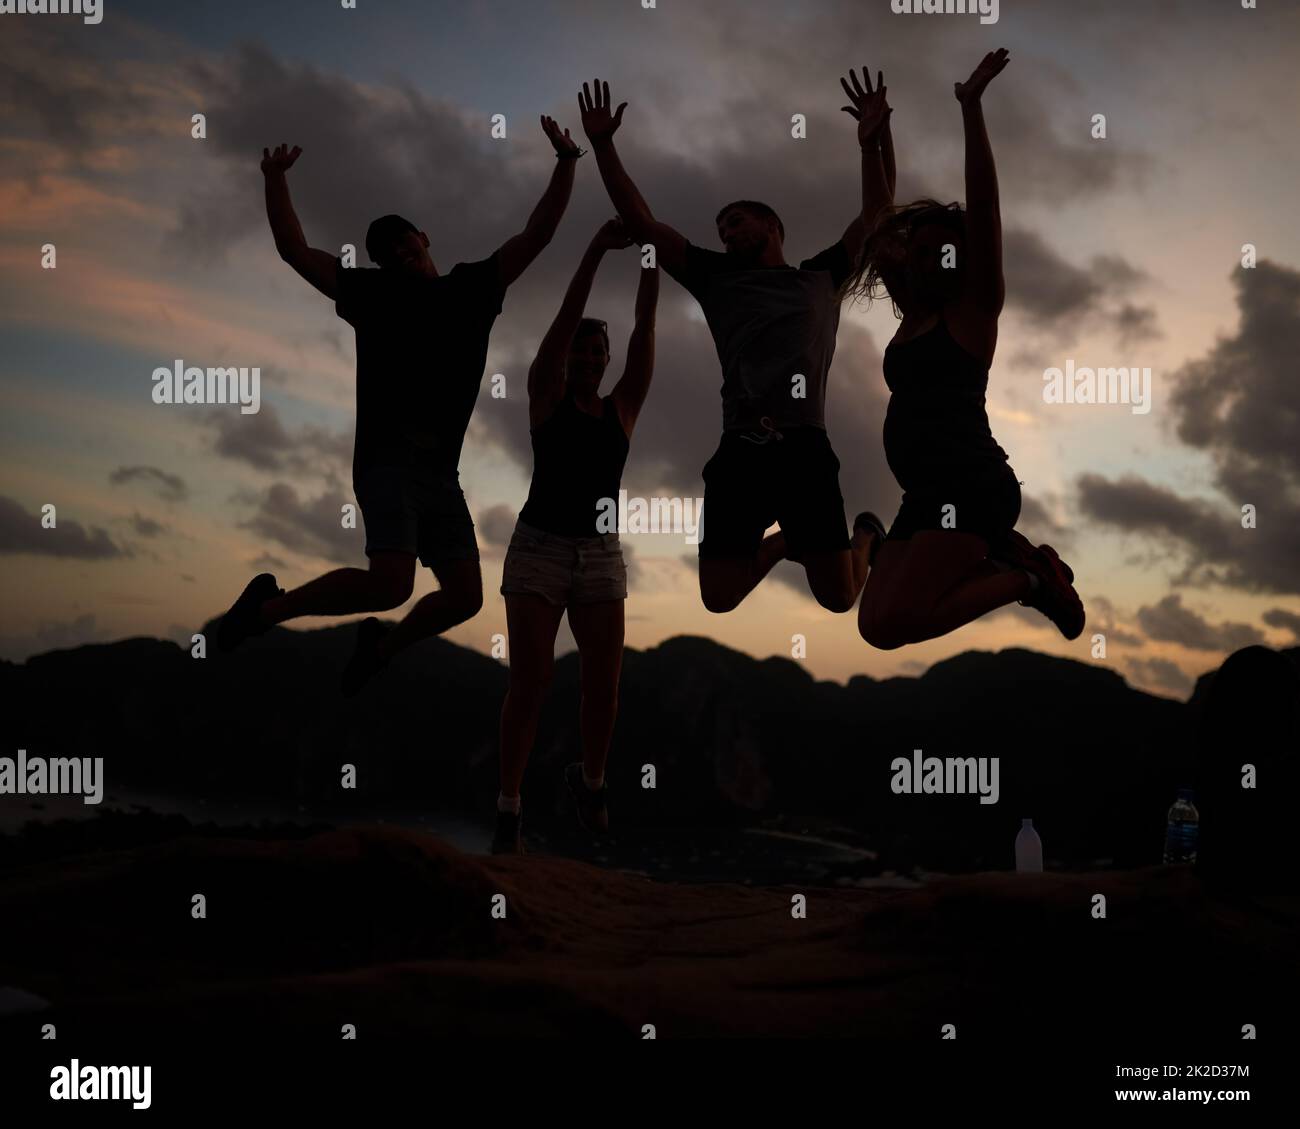 Springen vor Freude. Aufnahme einer Gruppe von springenden Freunden, die gegen einen Sonnenuntergang gedreht wurden. Stockfoto